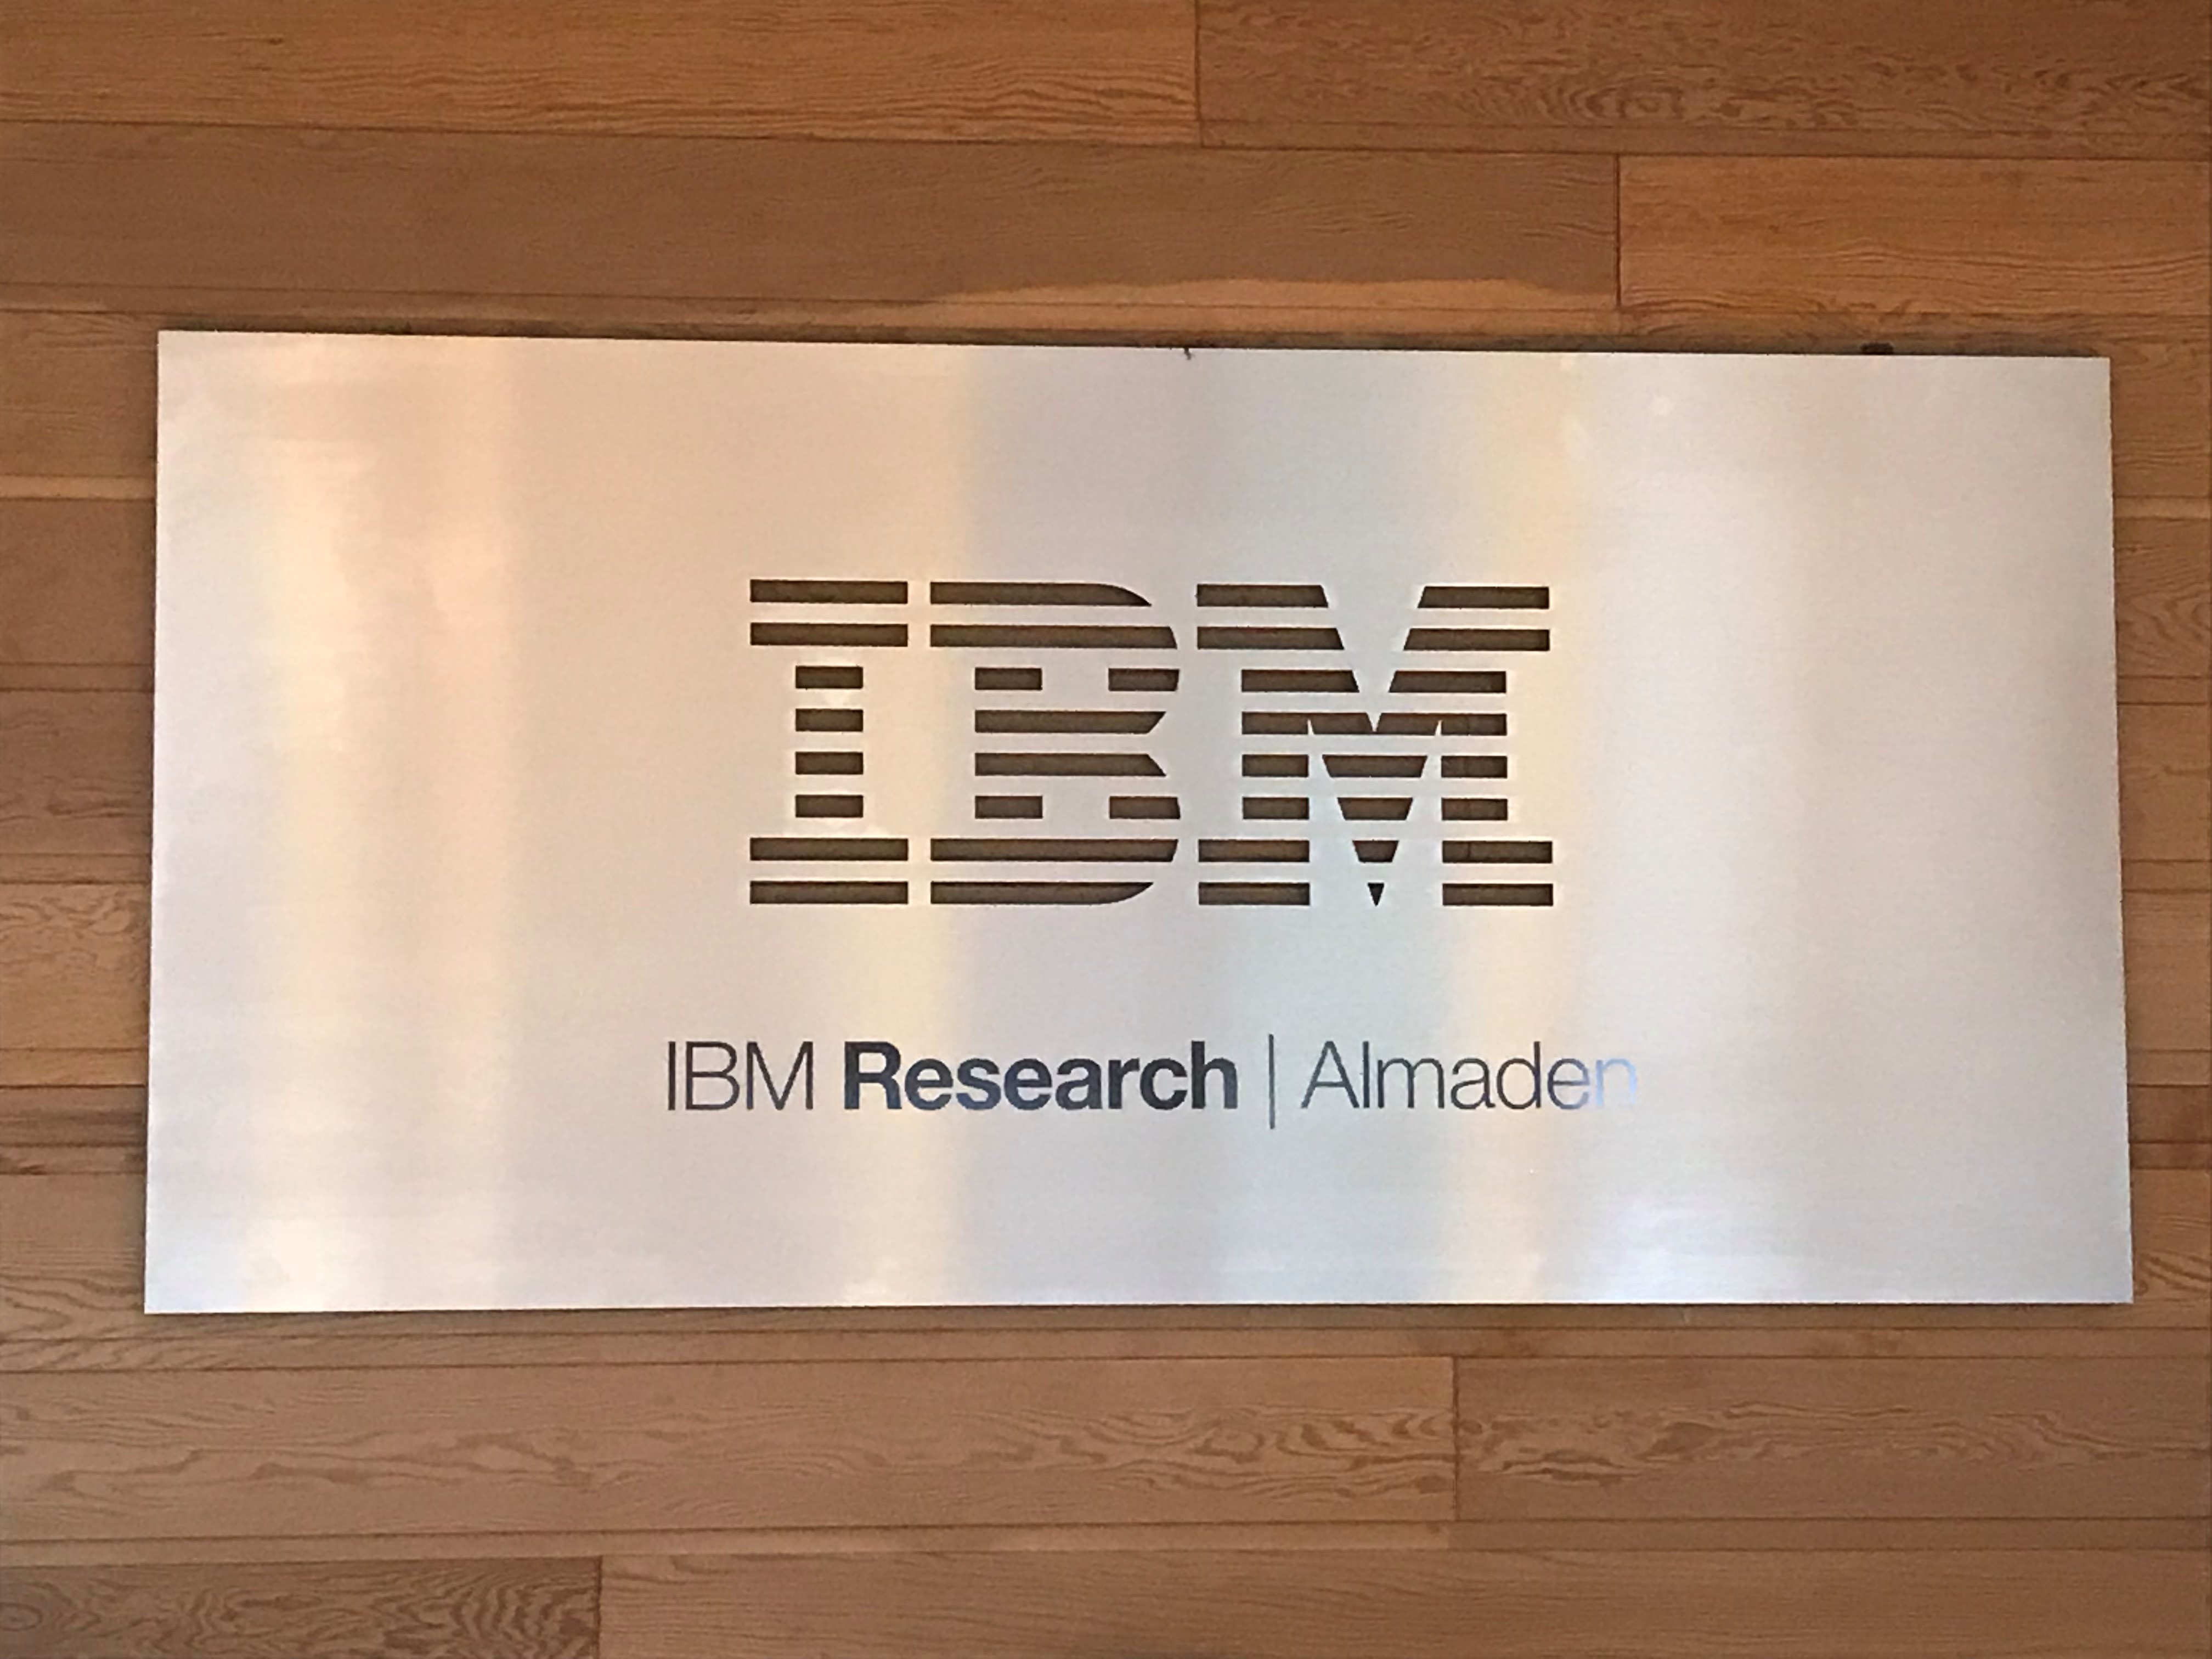 San Jose - IBM